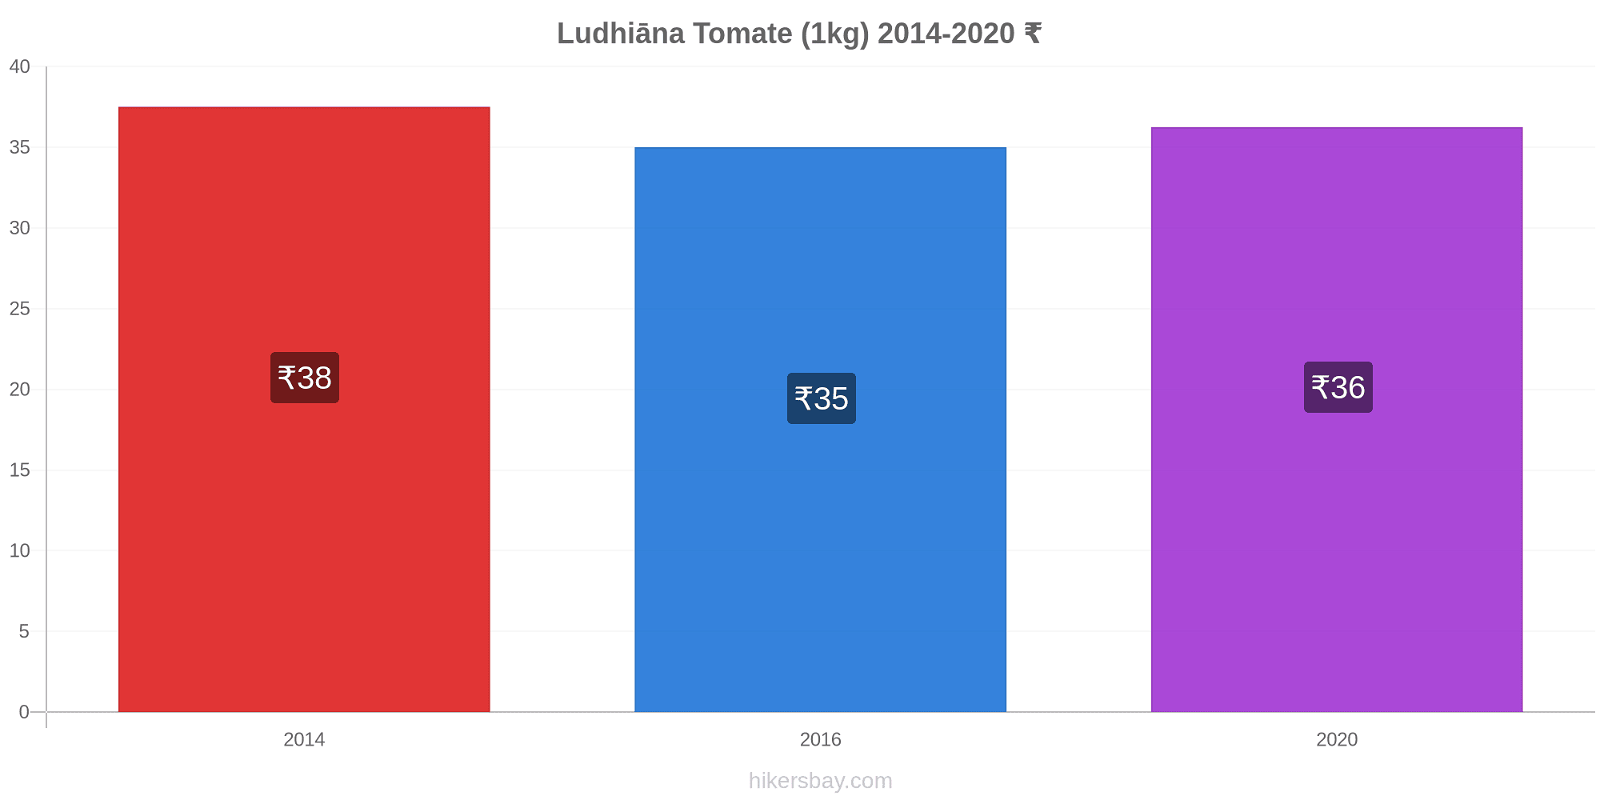 Ludhiāna cambios de precios Tomate (1kg) hikersbay.com